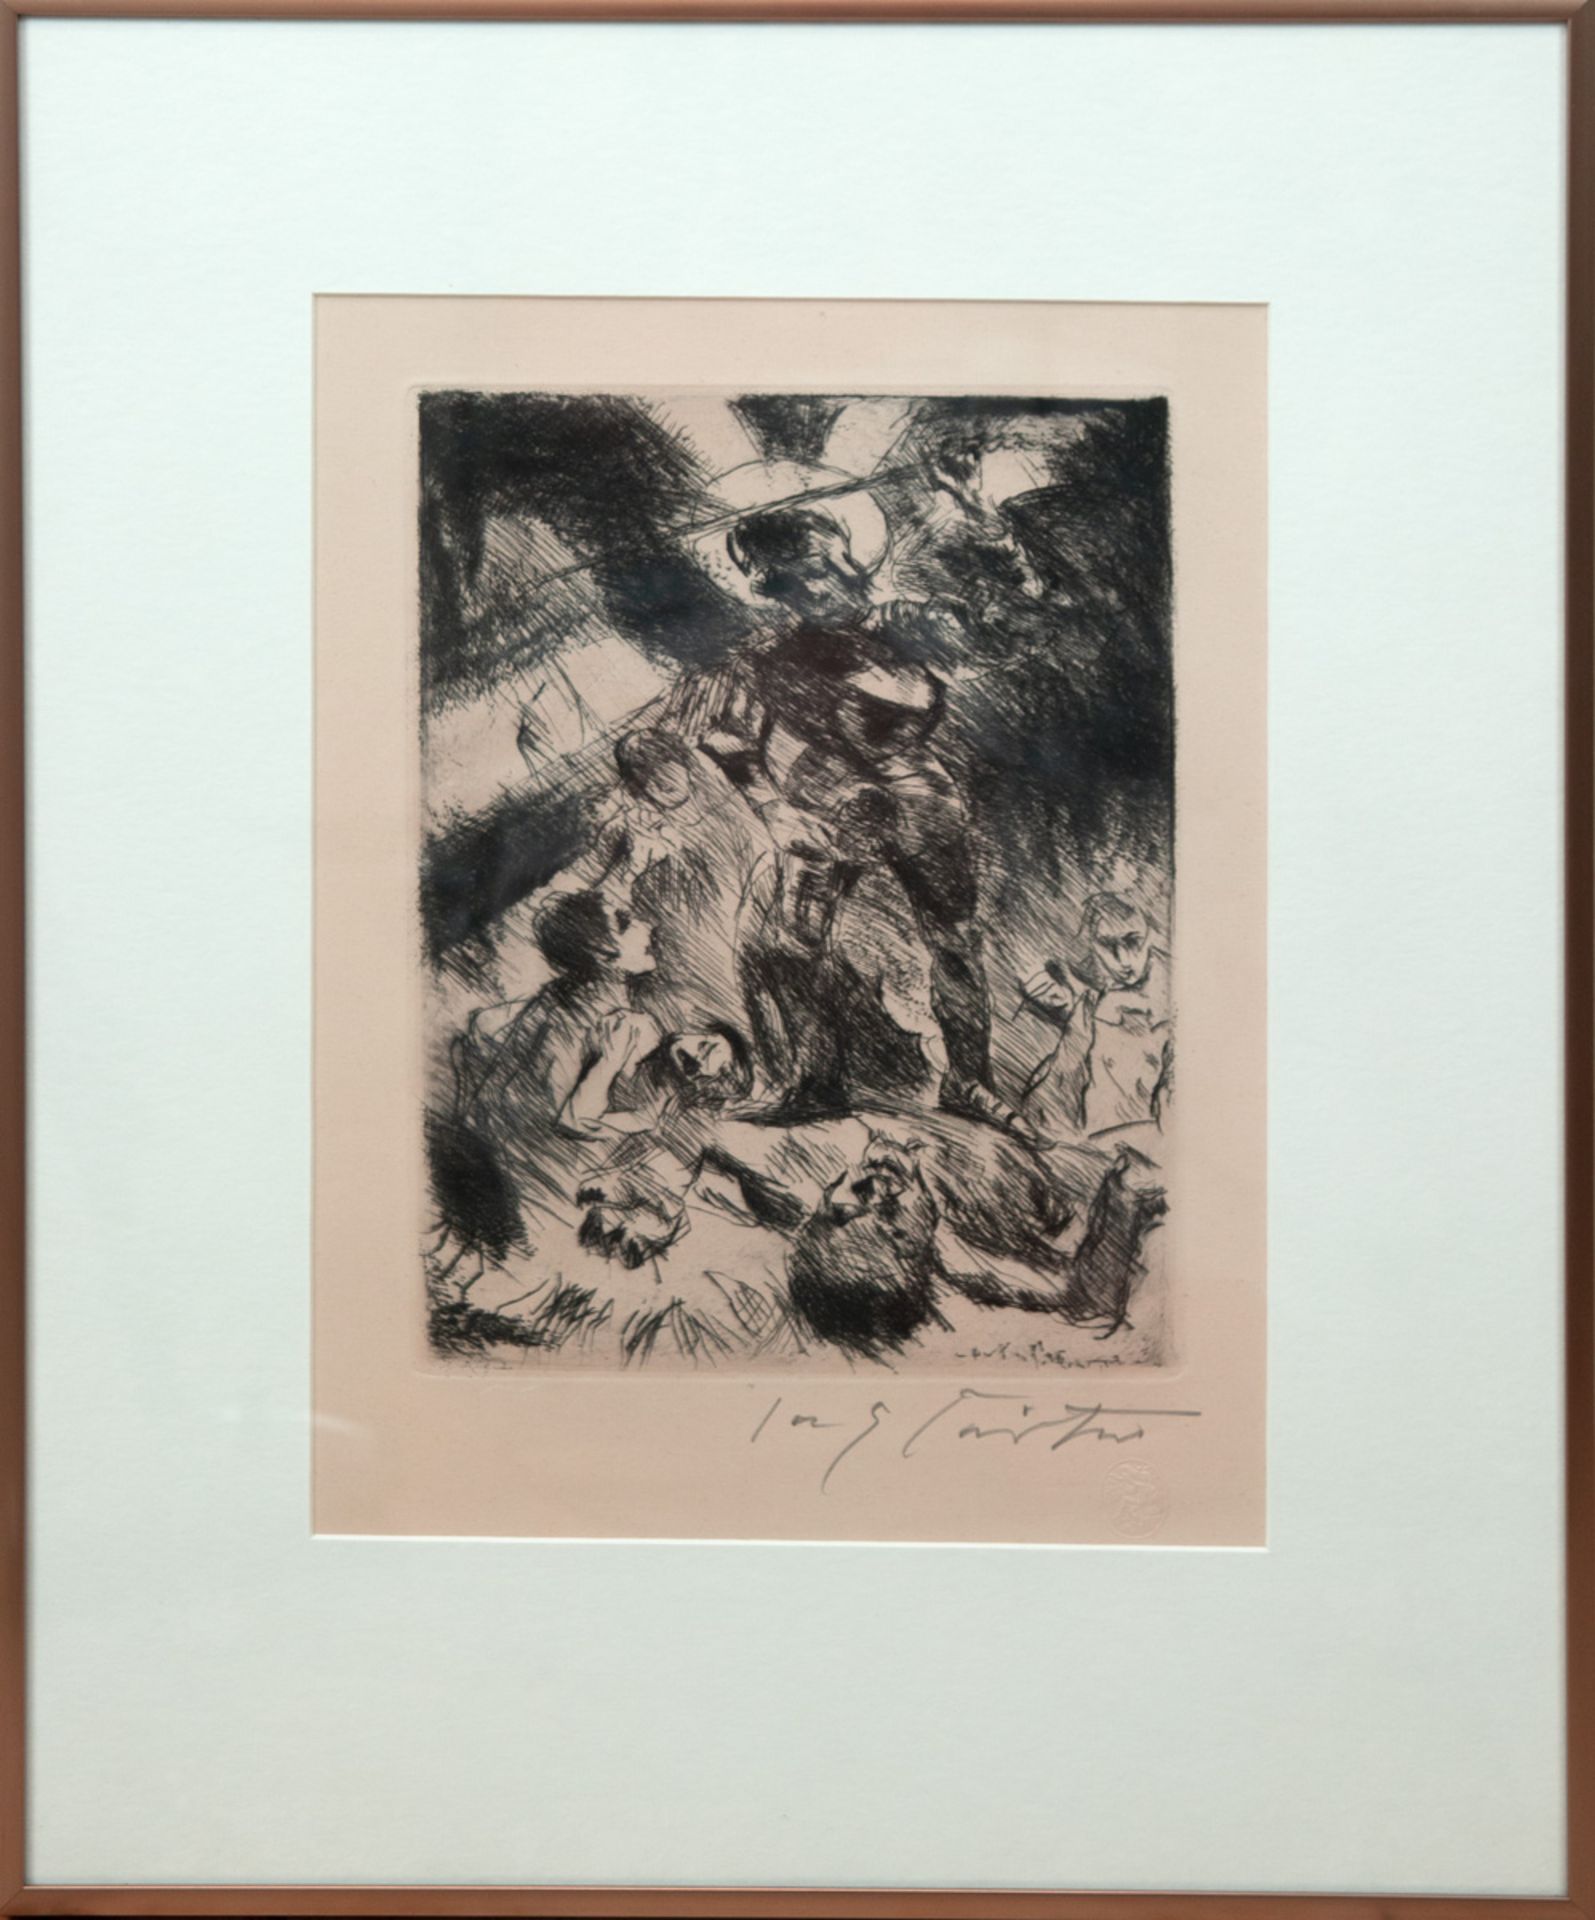 Corinth, Lovis (1858 Tapiau-1925 Zandvoort) "Der Heilige Michael", Radierung, in derPlatte